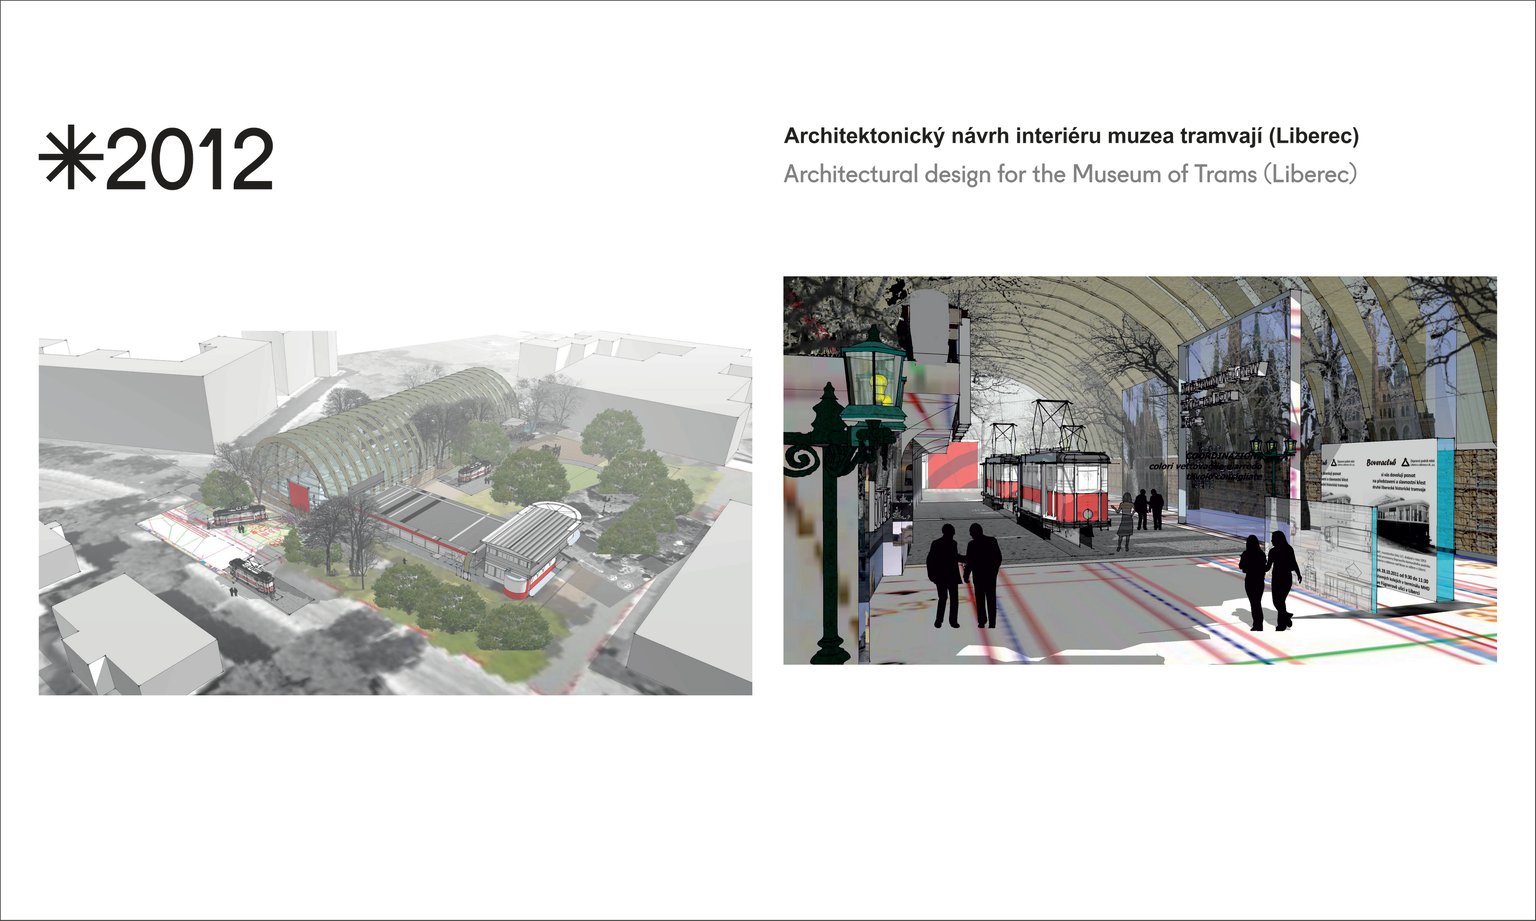 Architektonický návrh interiéru muzea tramvají v Liberci